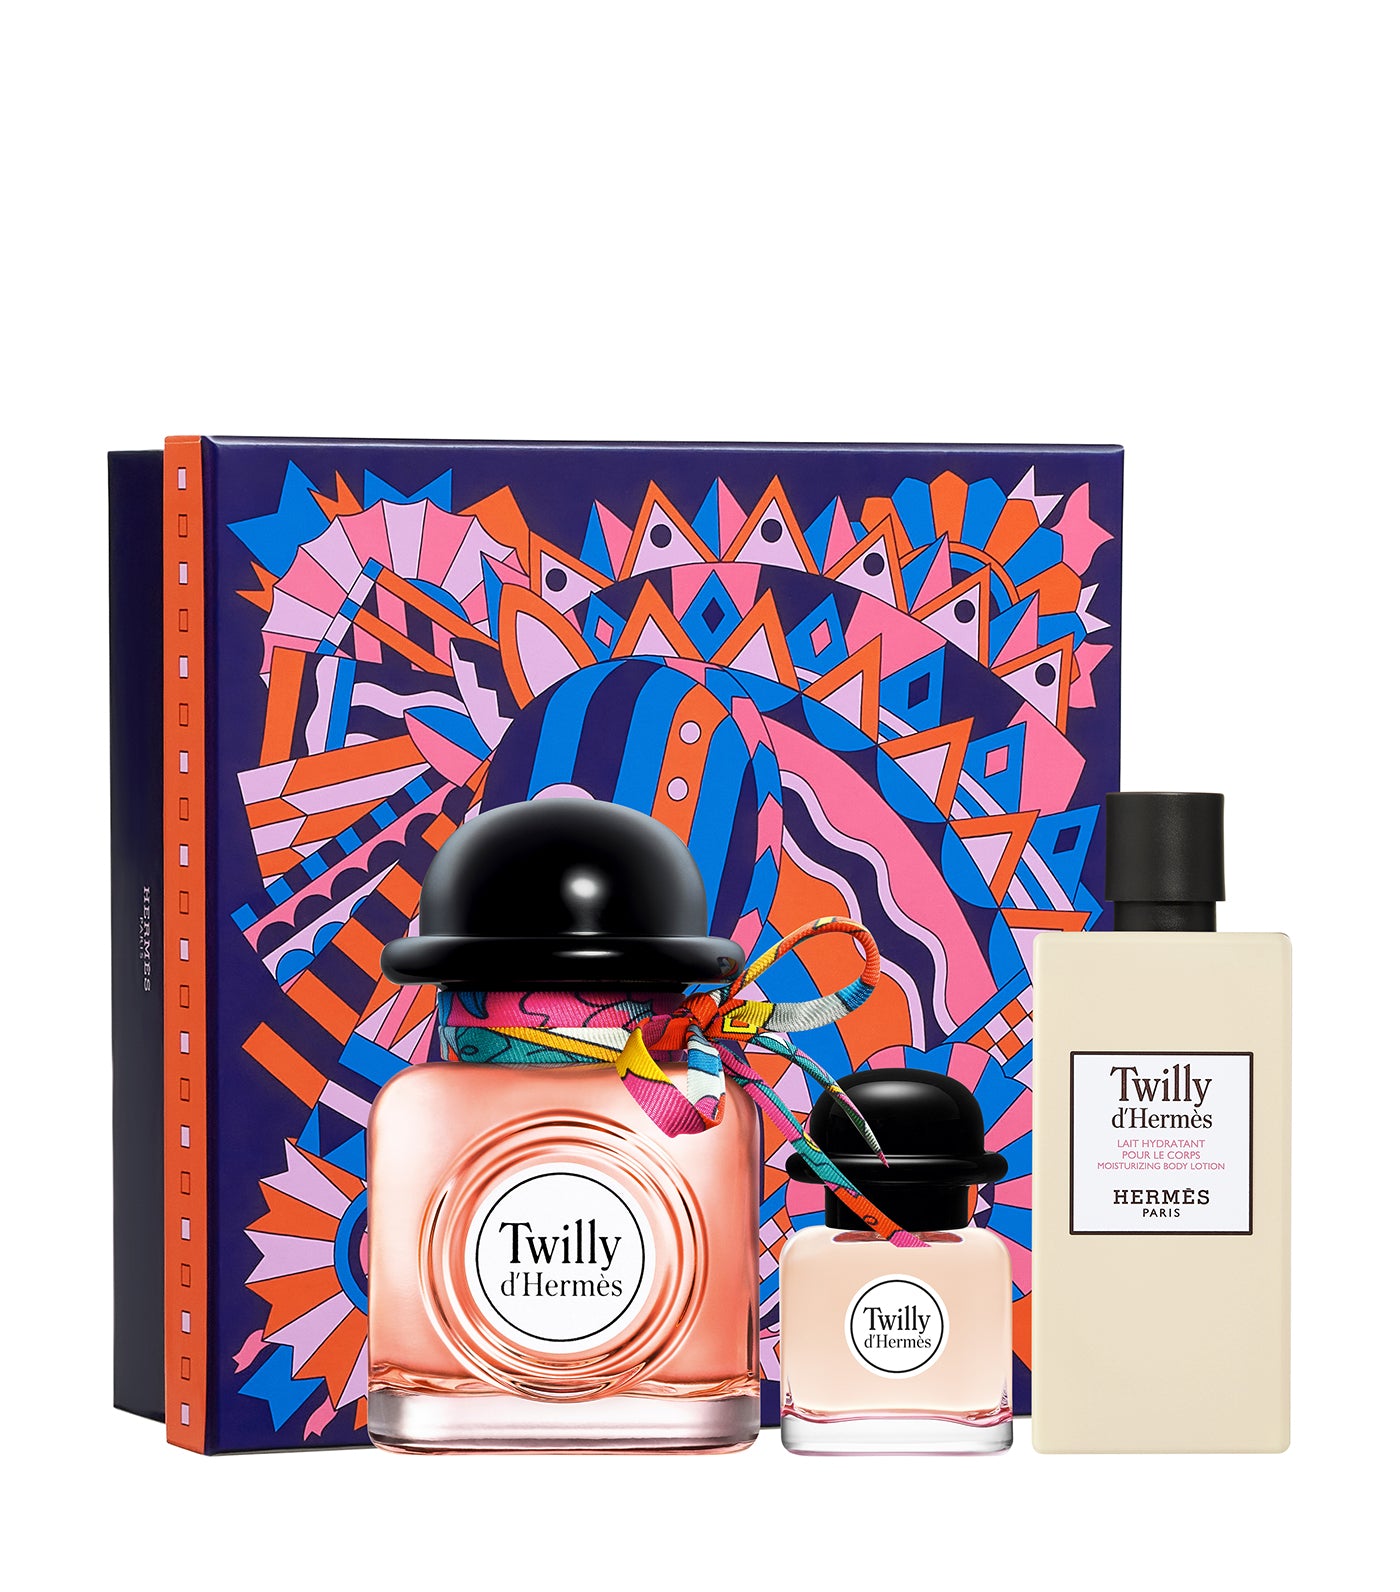 Twilly d'Hermès gift set, Eau de Parfum 85ml + Eau de parfum 7.5ml + body lotion 80ml